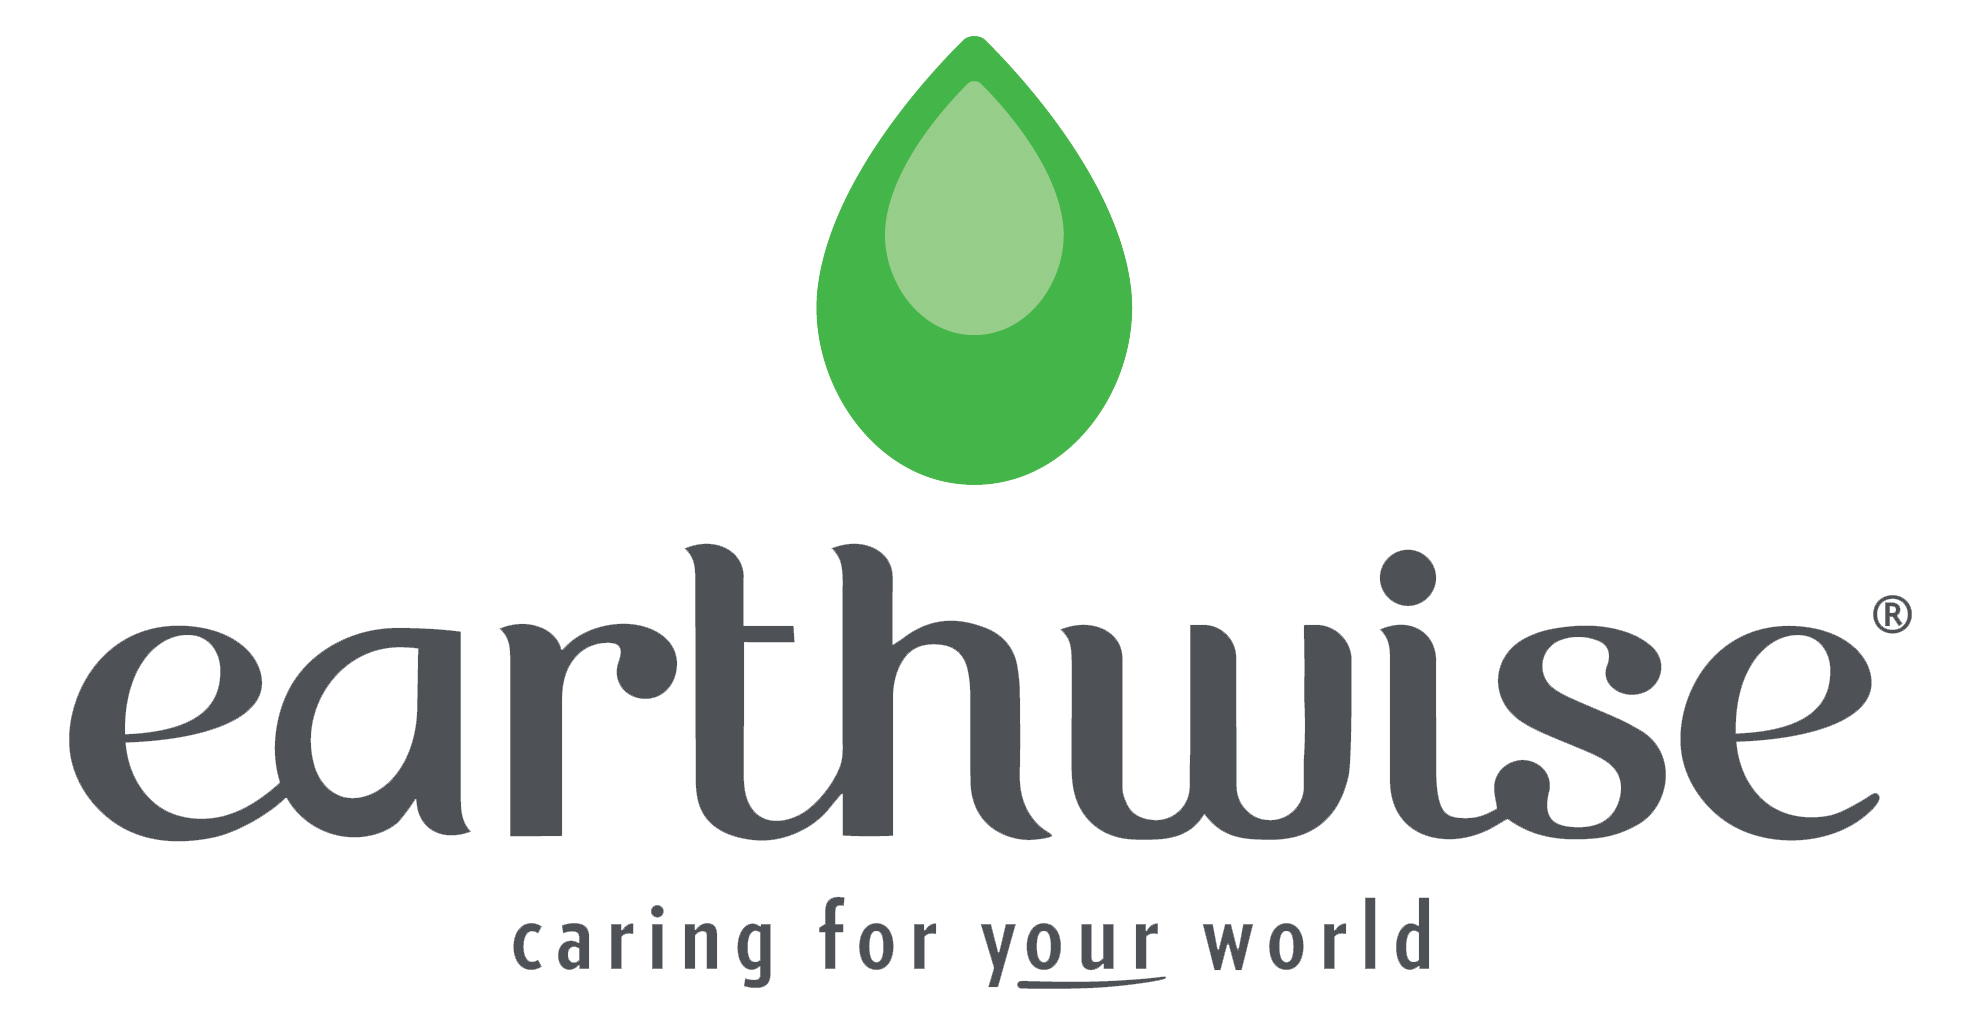 Earthwise logo